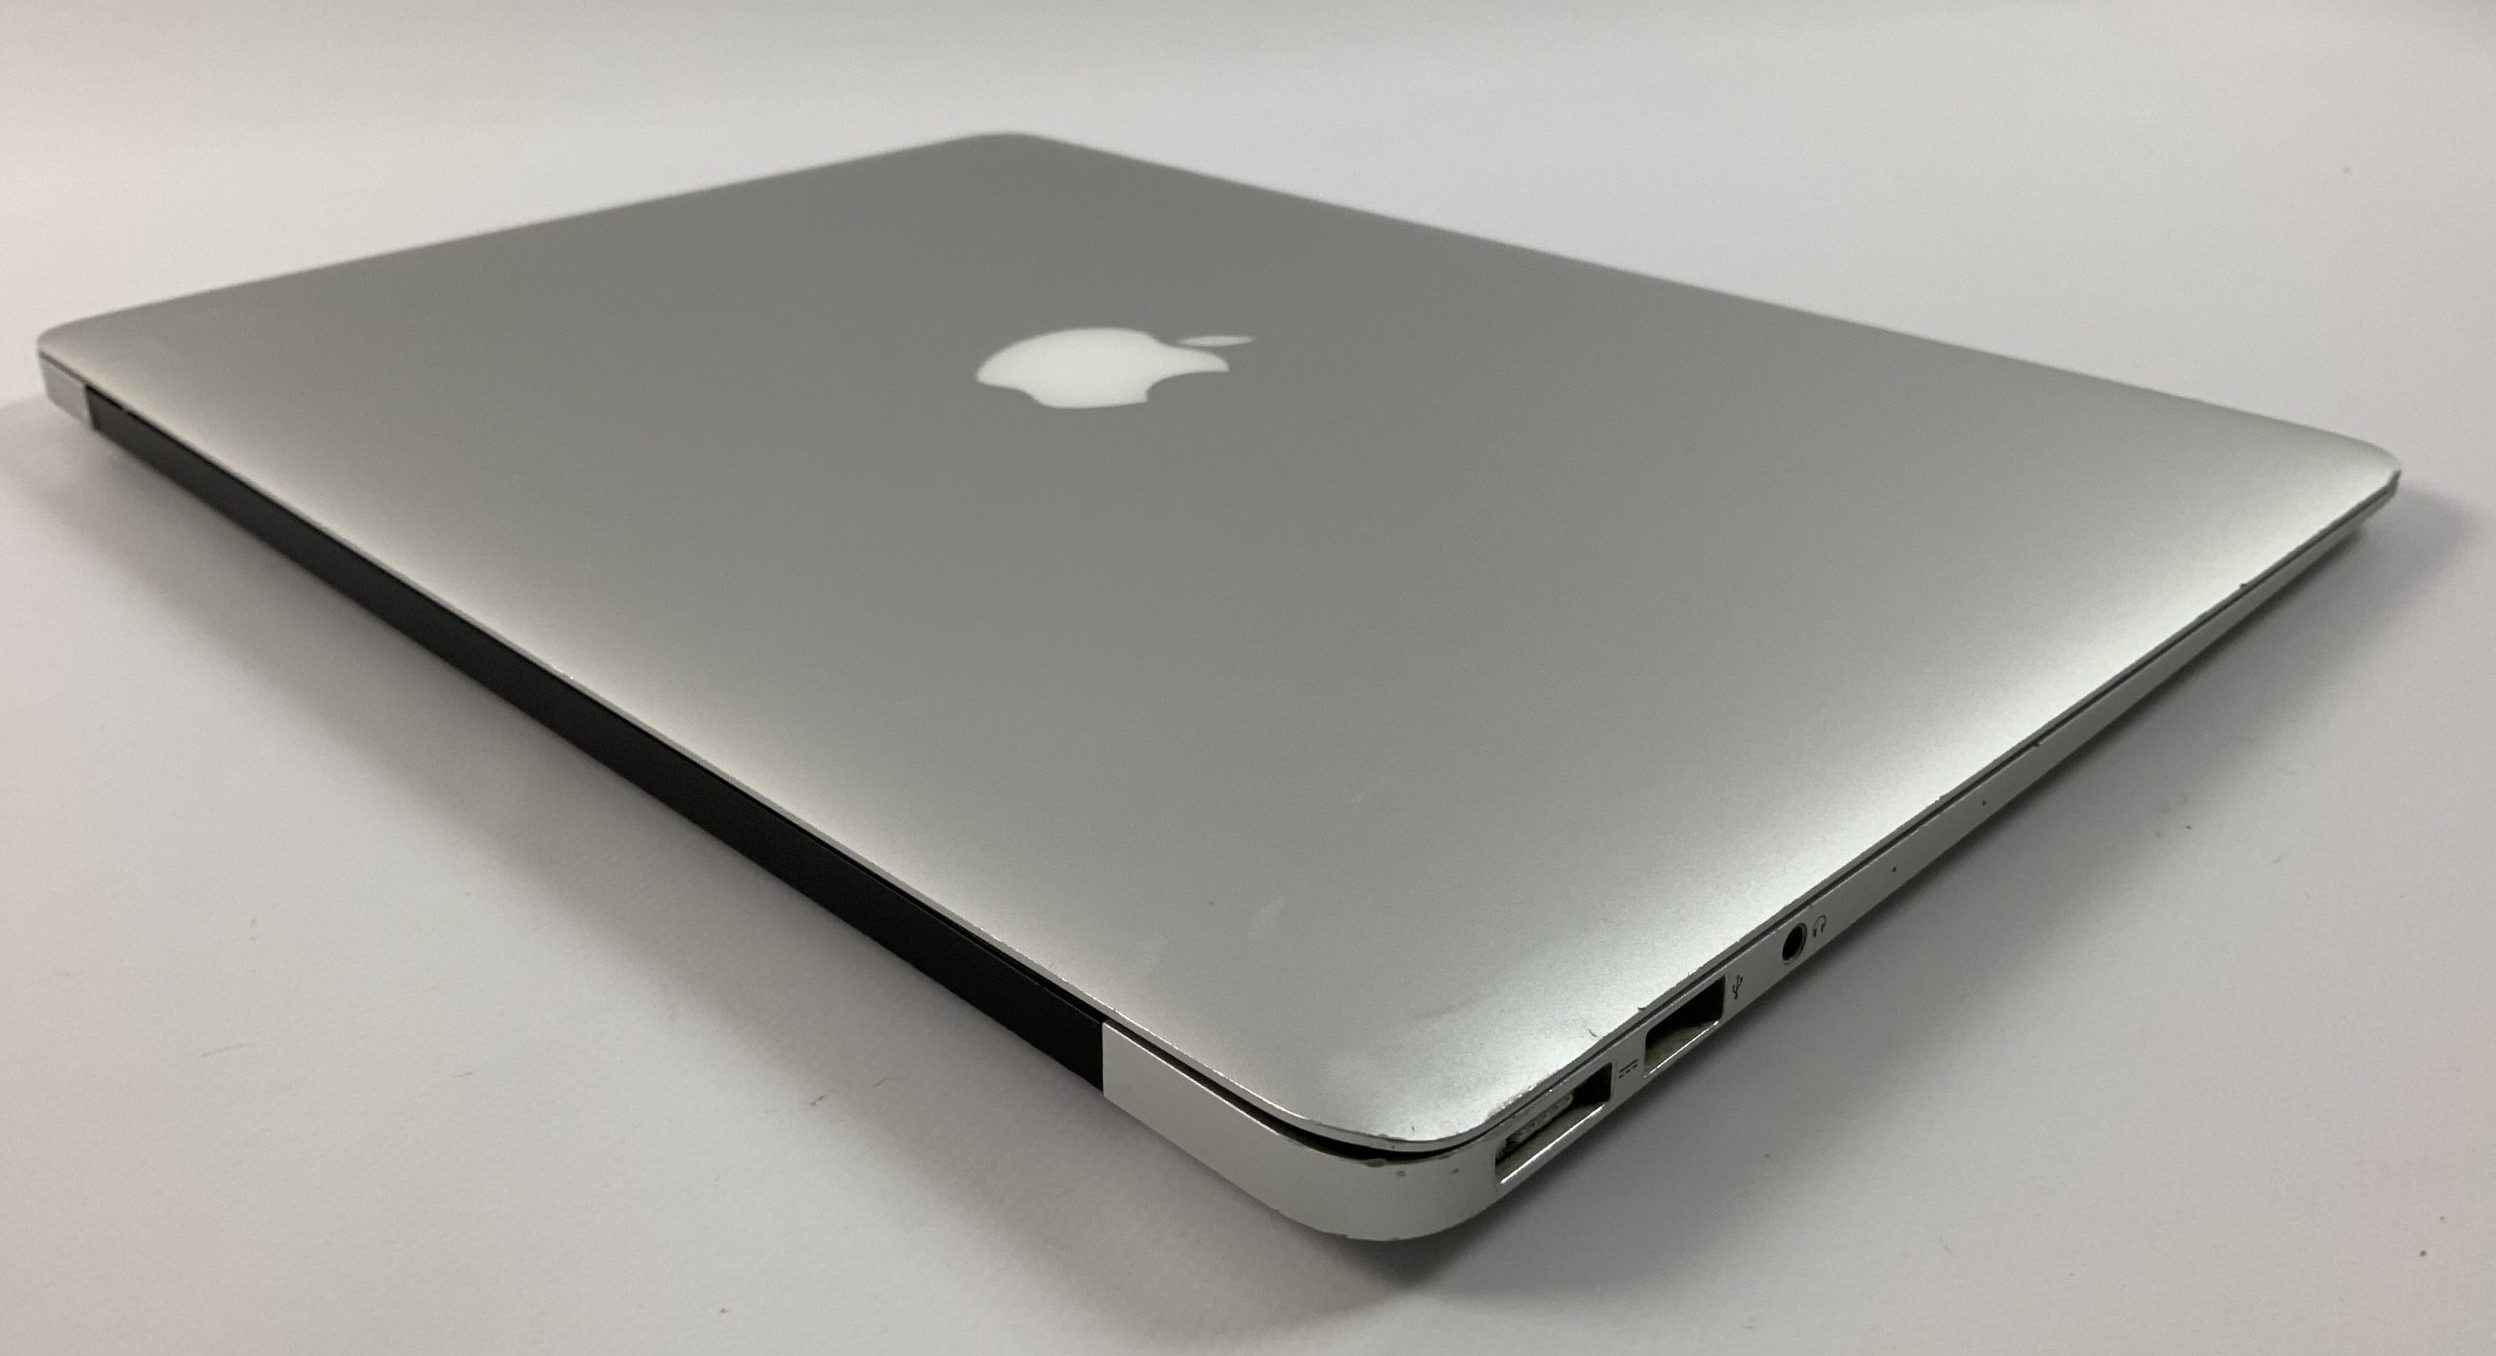 MacBook Air 13" Mid 2017 (Intel Core i5 1.8 GHz 8 GB RAM 256 GB SSD), Intel Core i5 1.8 GHz, 8 GB RAM, 256 GB SSD, Kuva 4